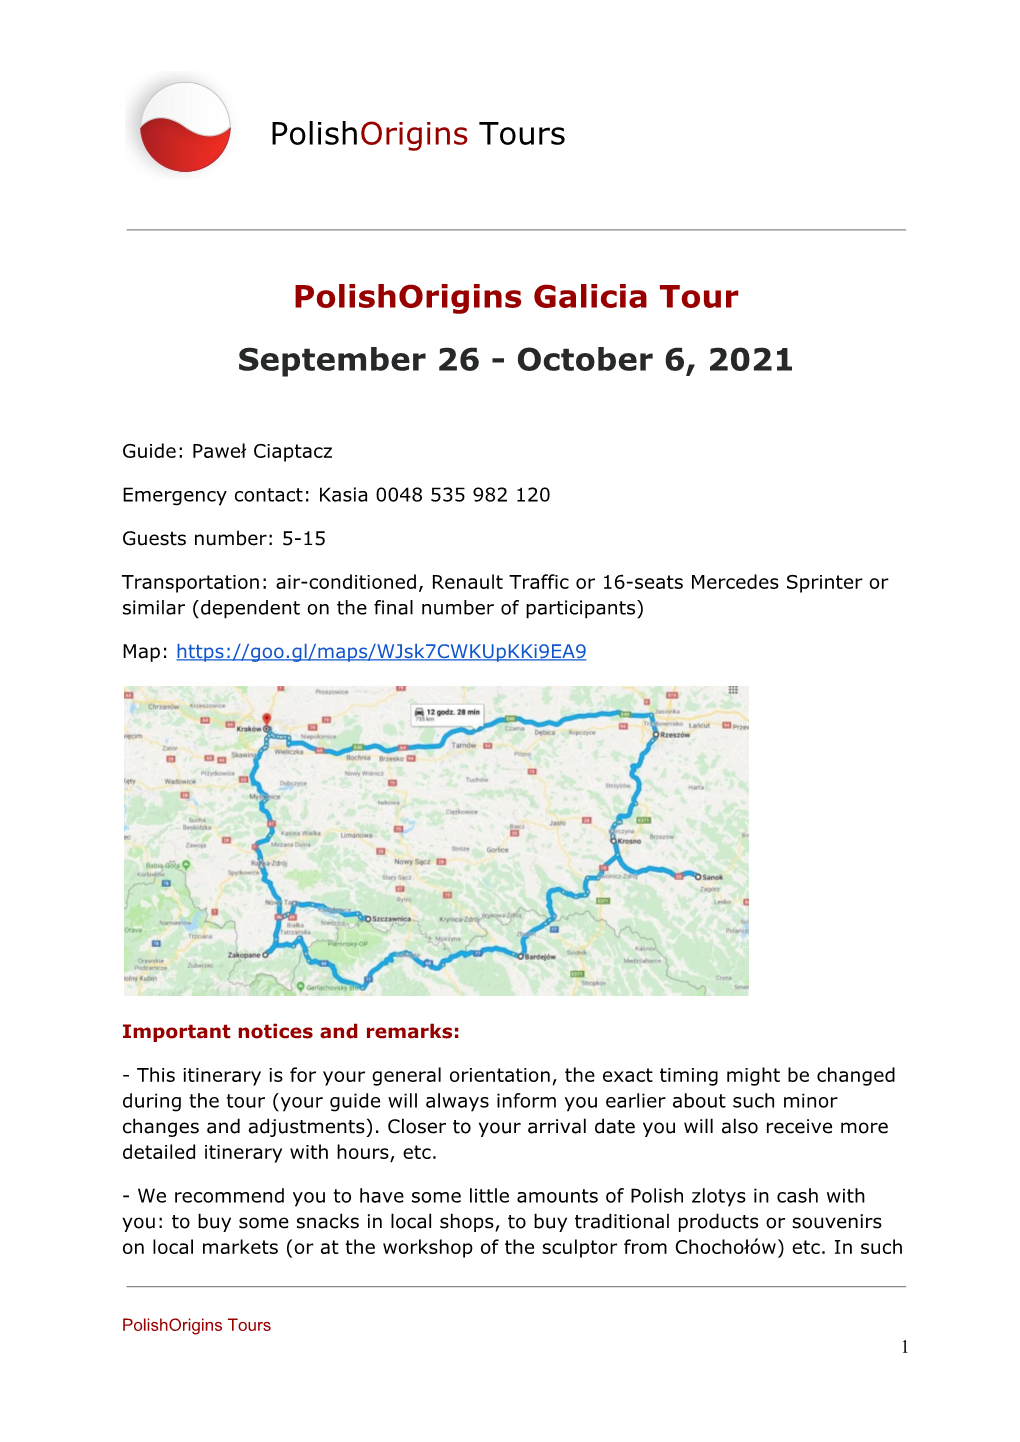 Polishorigins Galicia Tour September 26